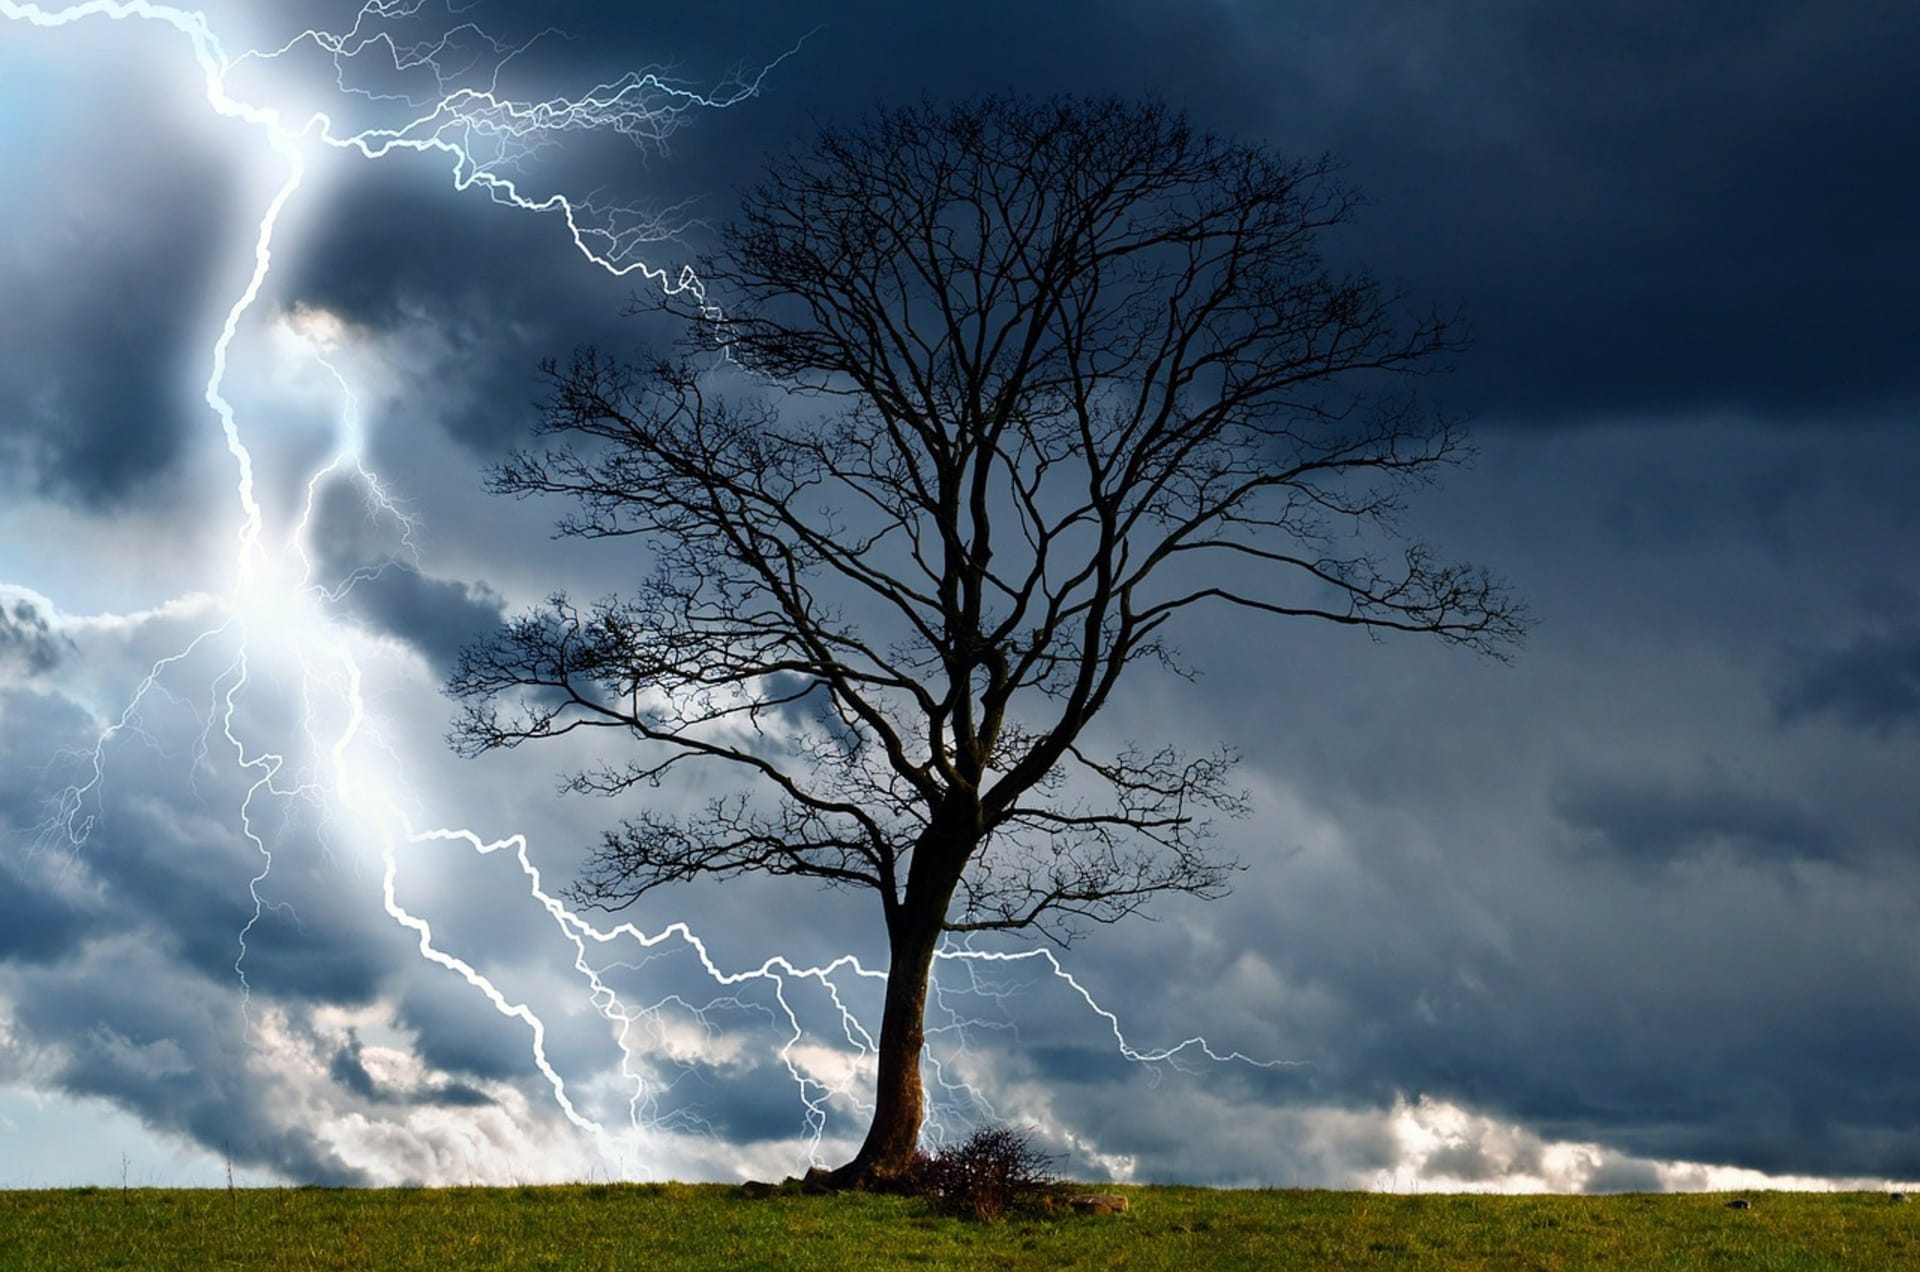 Bouřka, blesk a strom